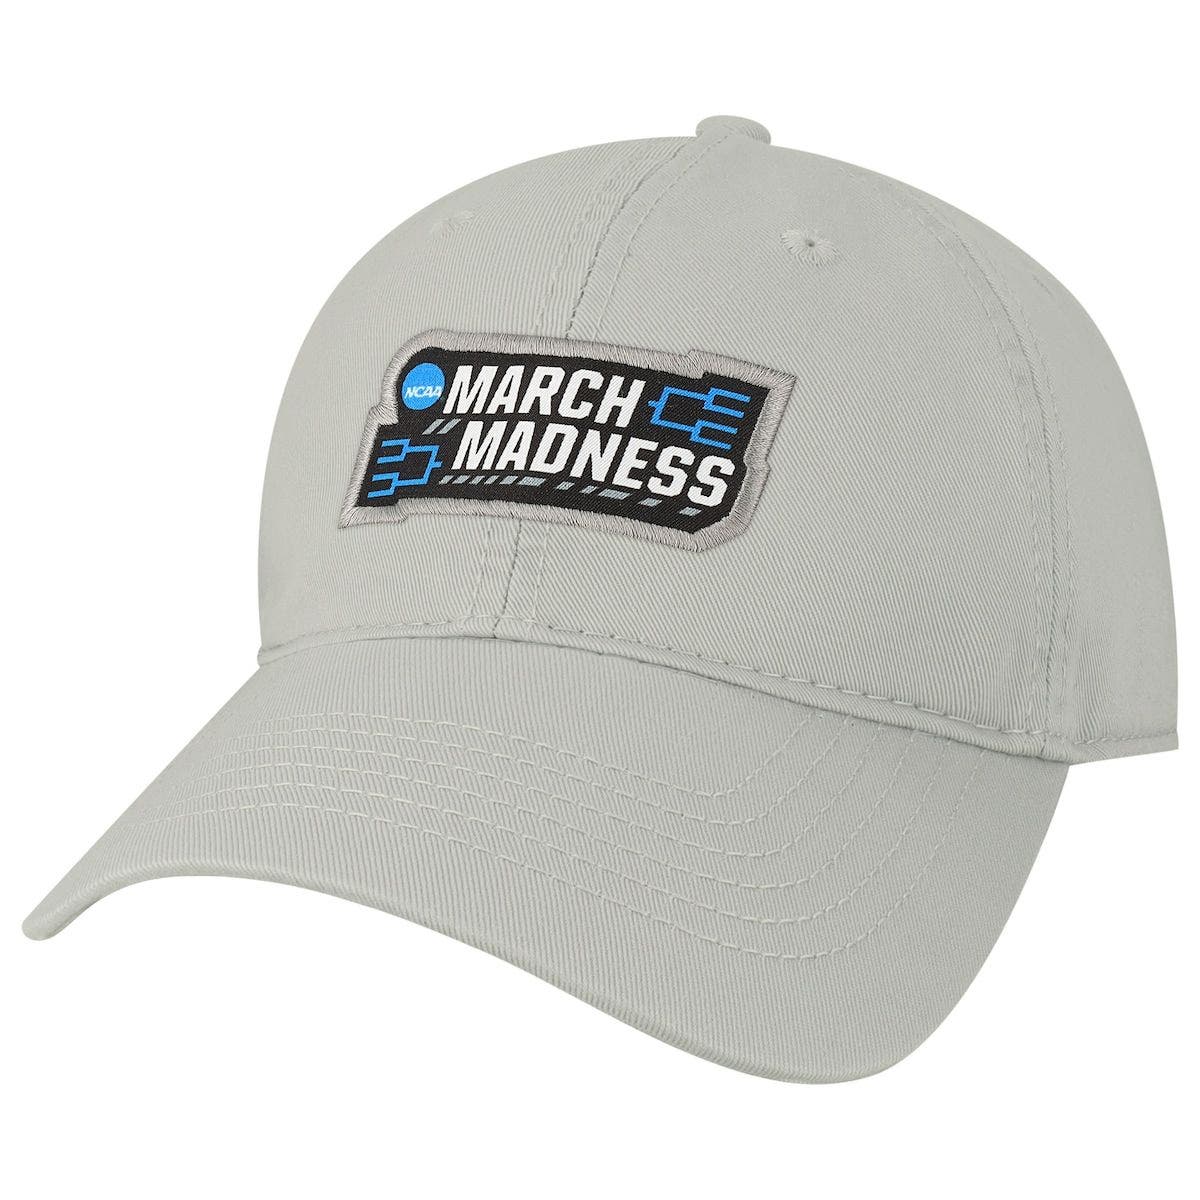 Elite Fan Shop NCAA Mens Hat Adjustable Relaxed Fit Z